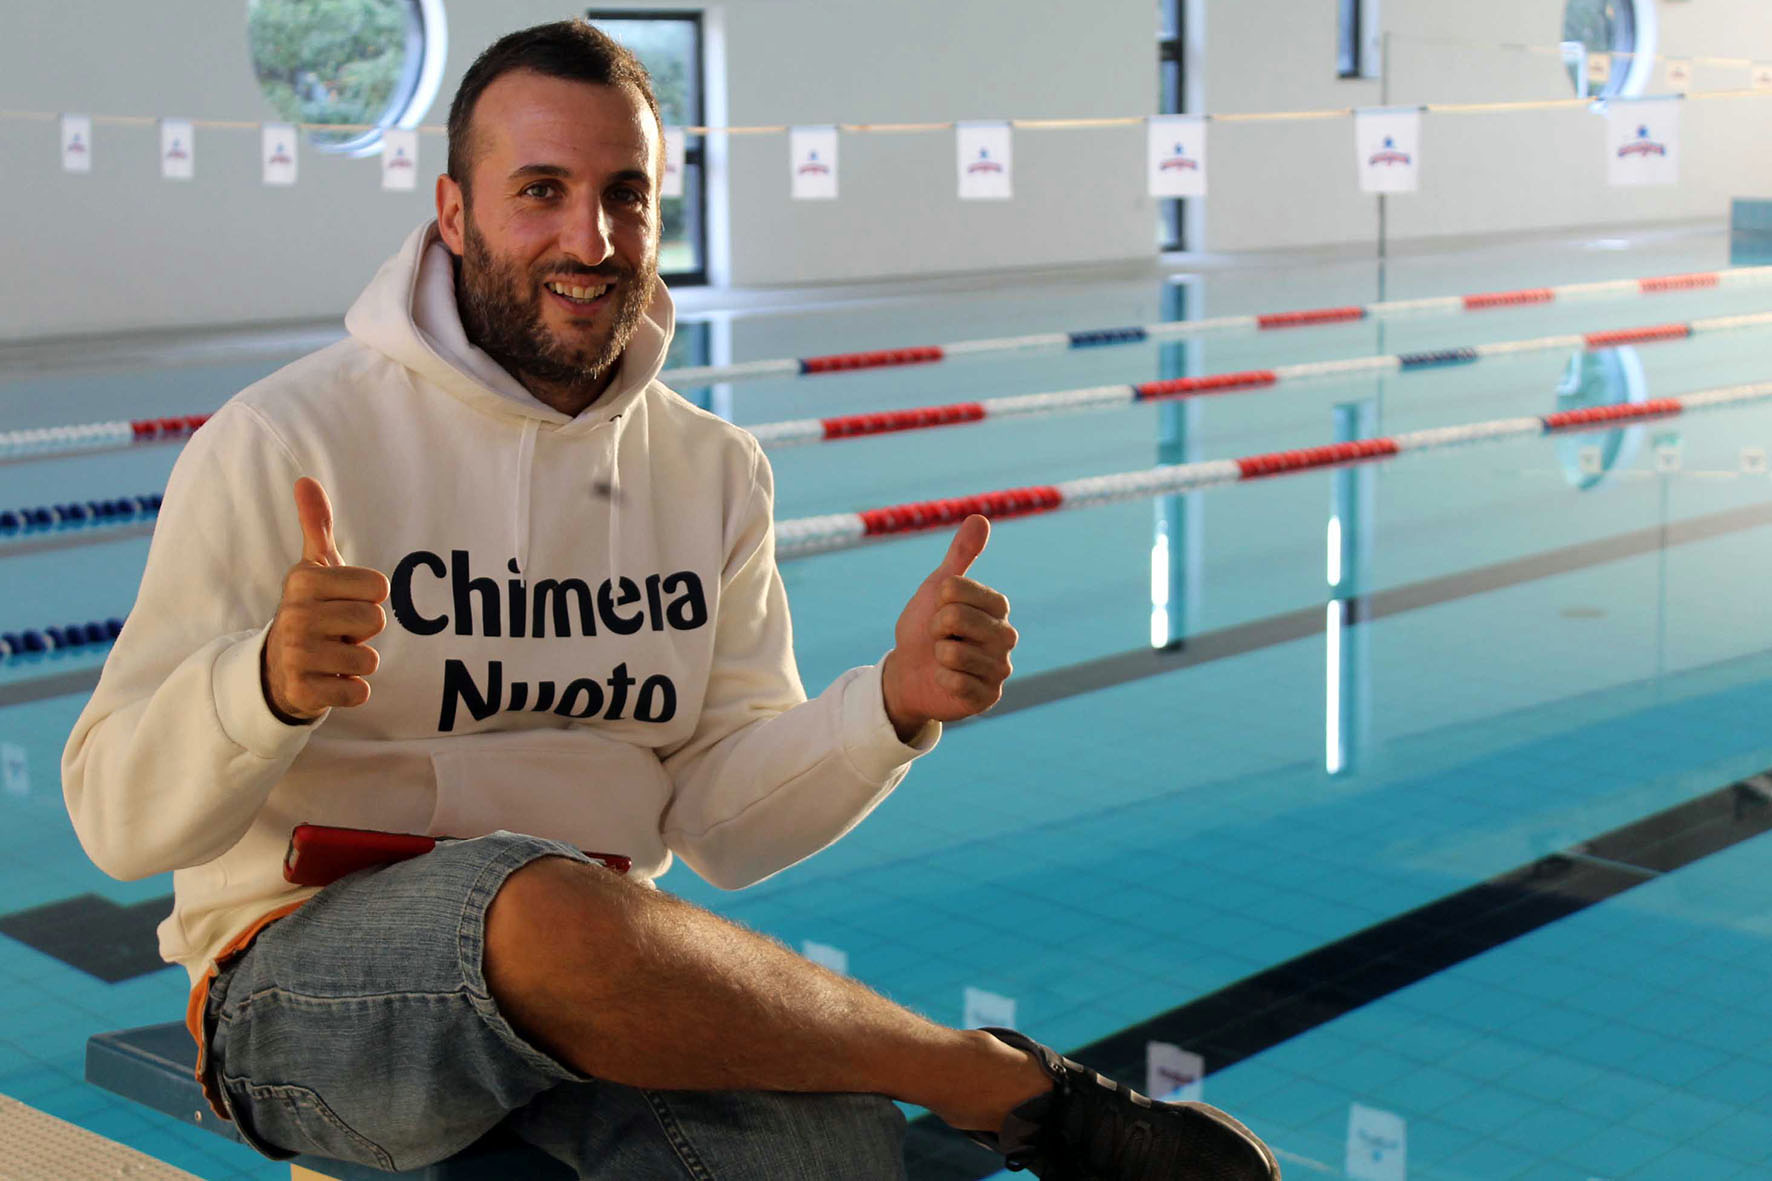 La Chimera Nuoto organizza il webinar “Il nuoto di domani”: ciclo di incontri sulla didattica natatoria